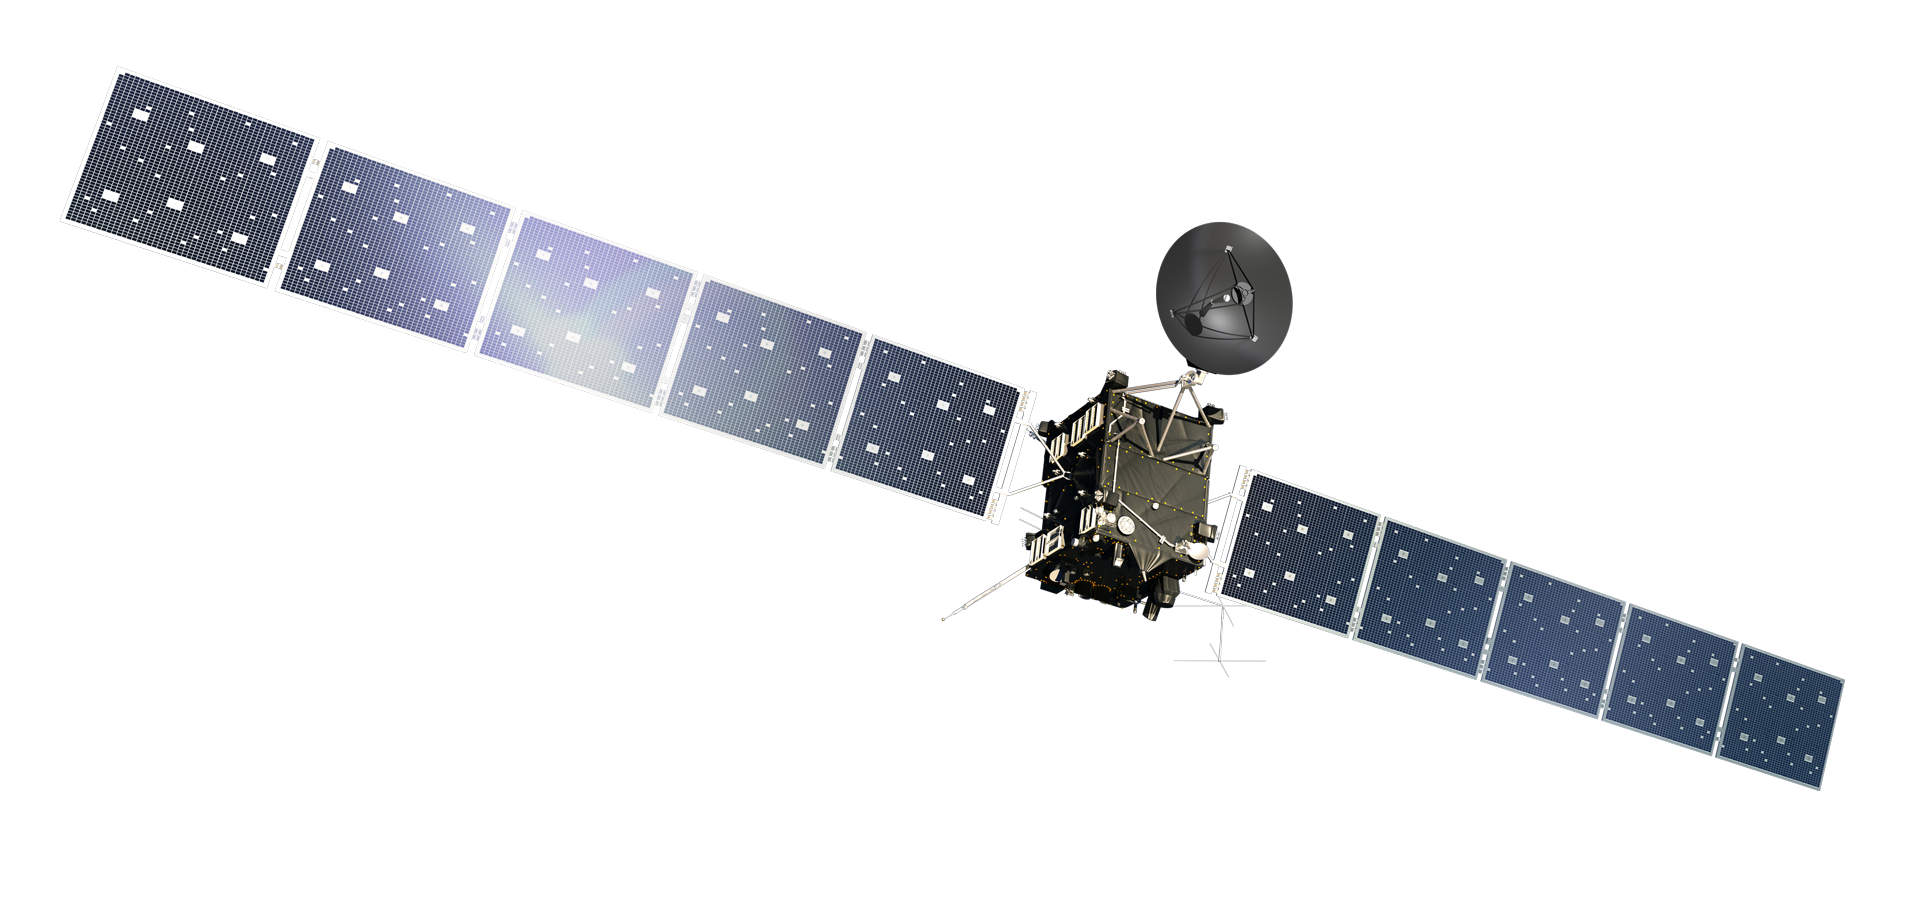 rosetta spacecraft